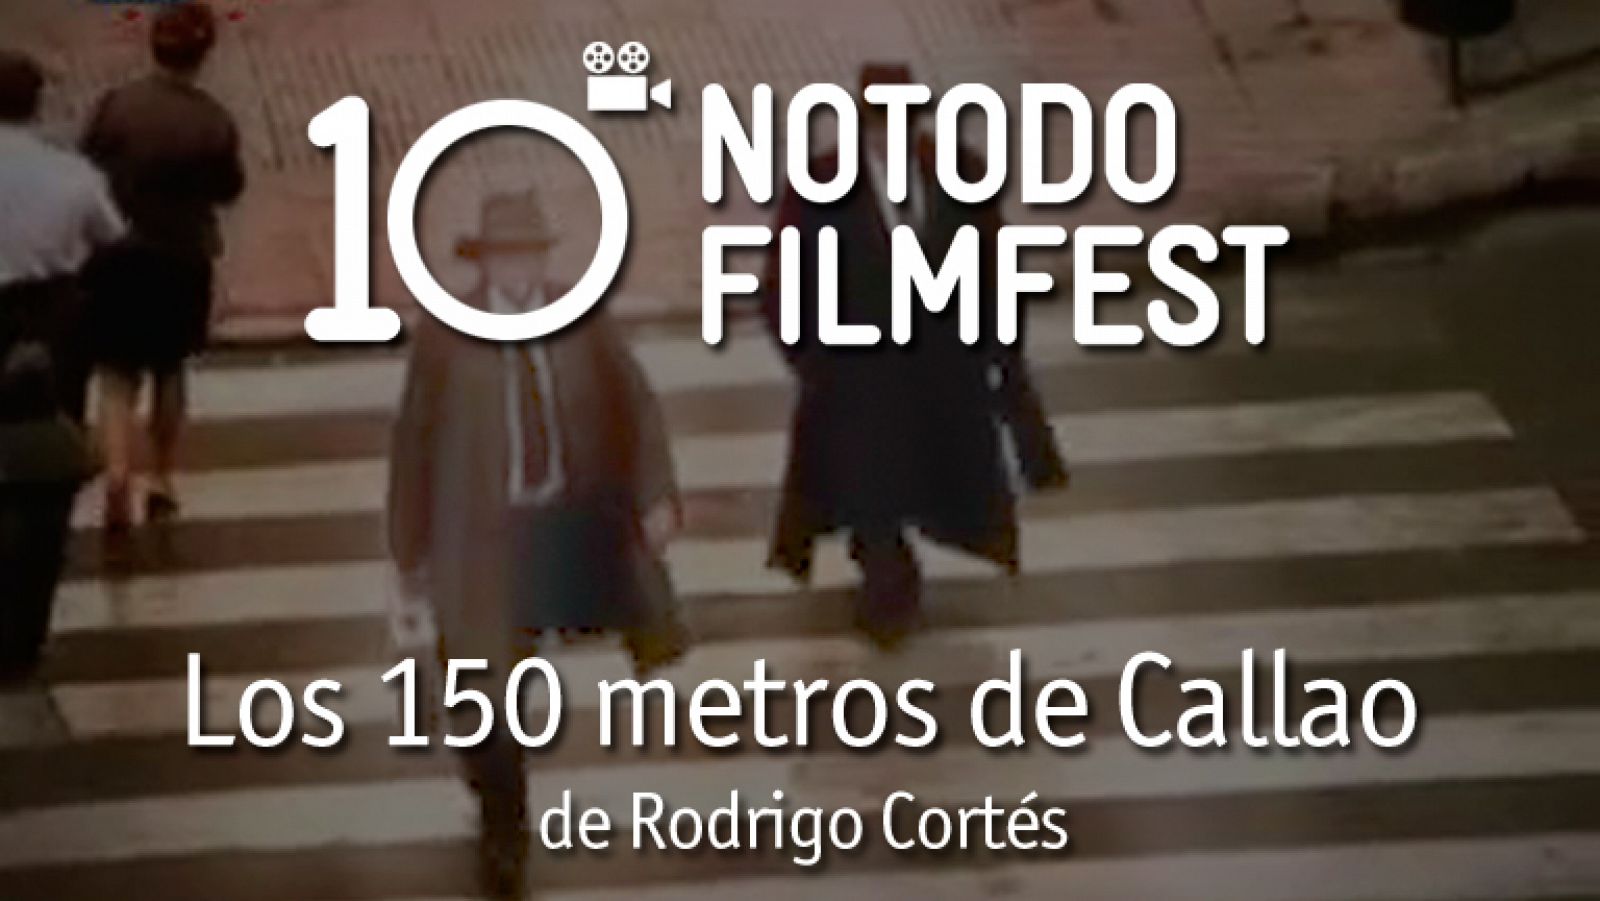 Los 150 metros de Callao - Rodrigo Cortés (2002)